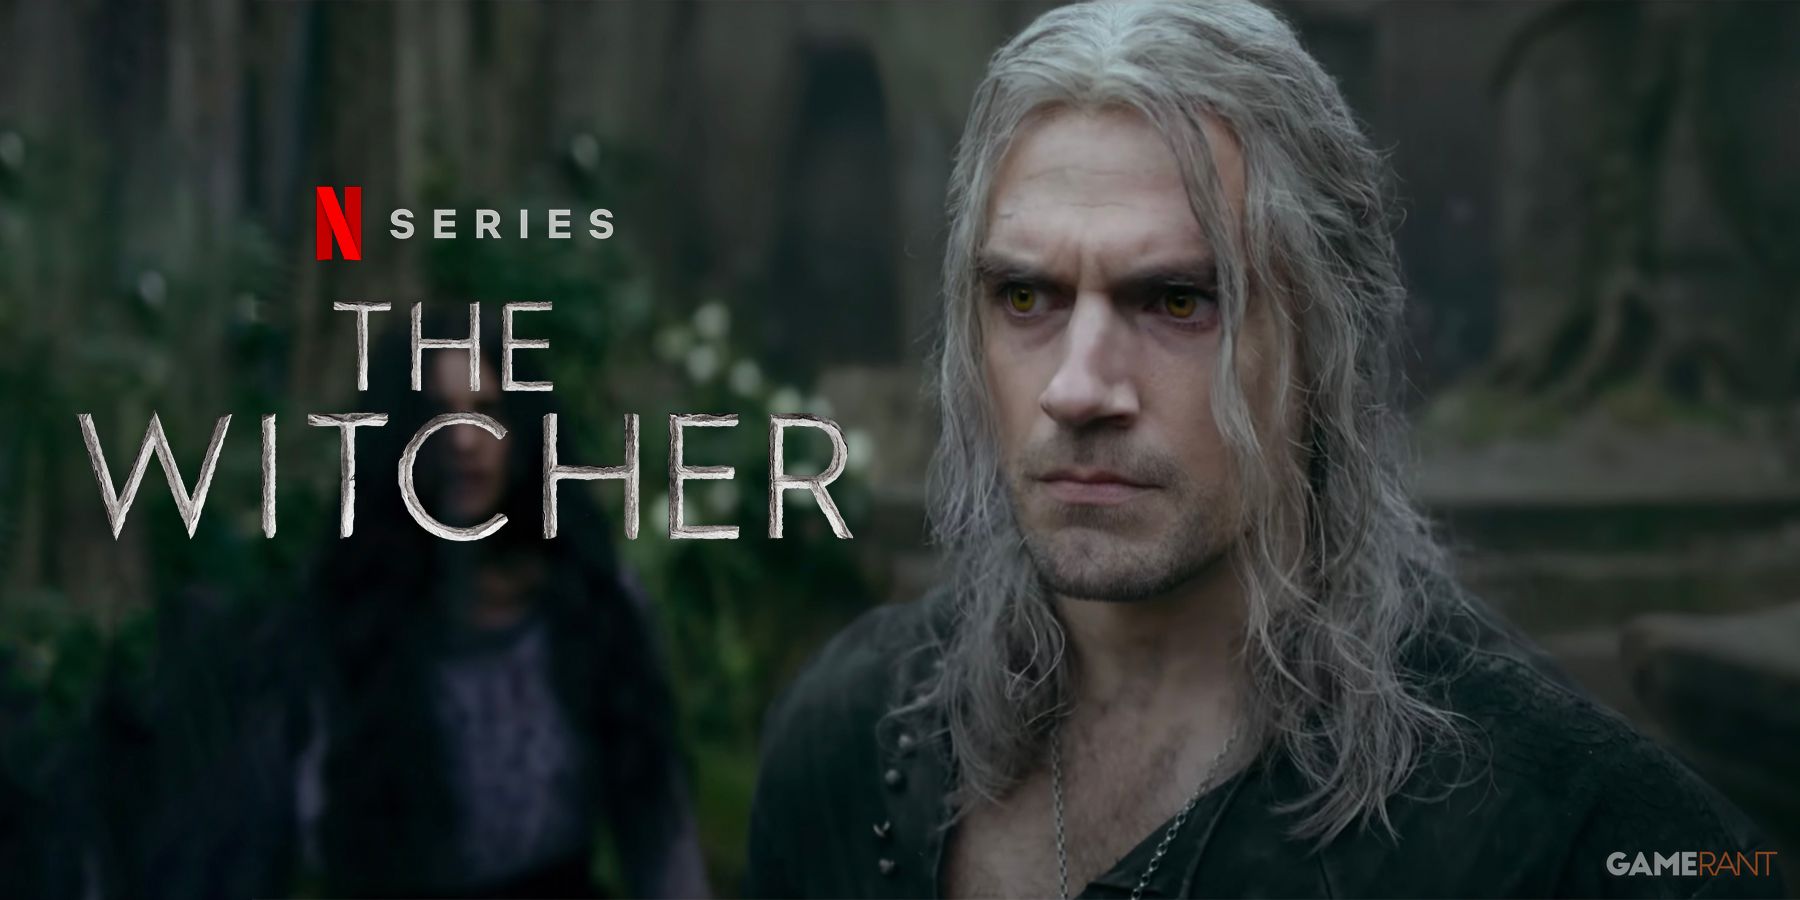 The Witcher Author Andrzej Sapkowski Netflix Show